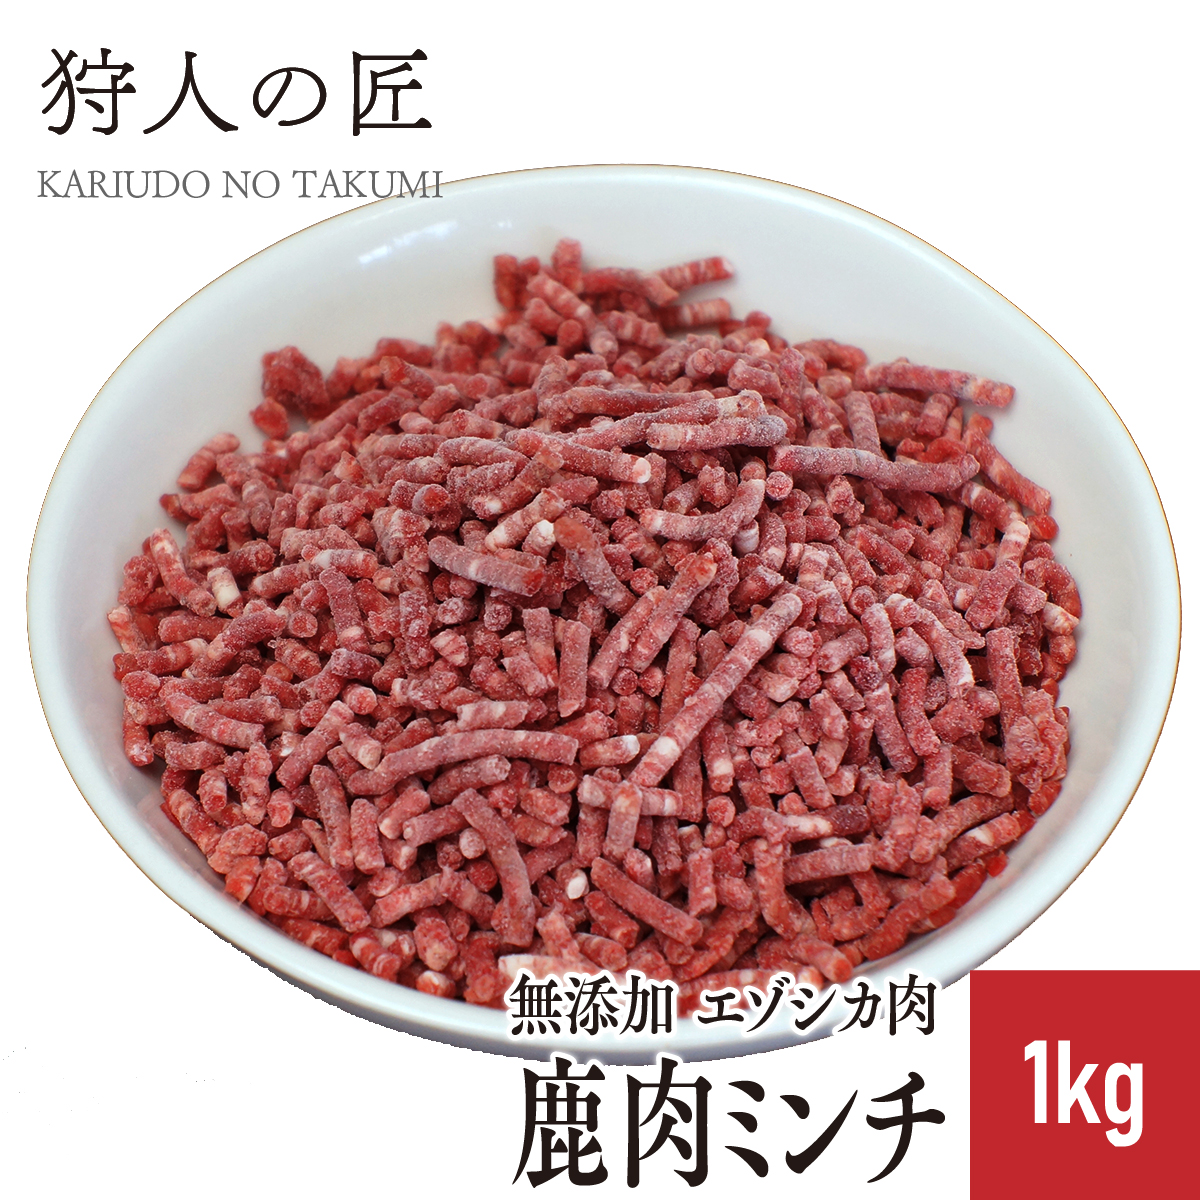 エゾ鹿肉 ミンチ (挽肉) 1kg ドッグフード・サプリメント